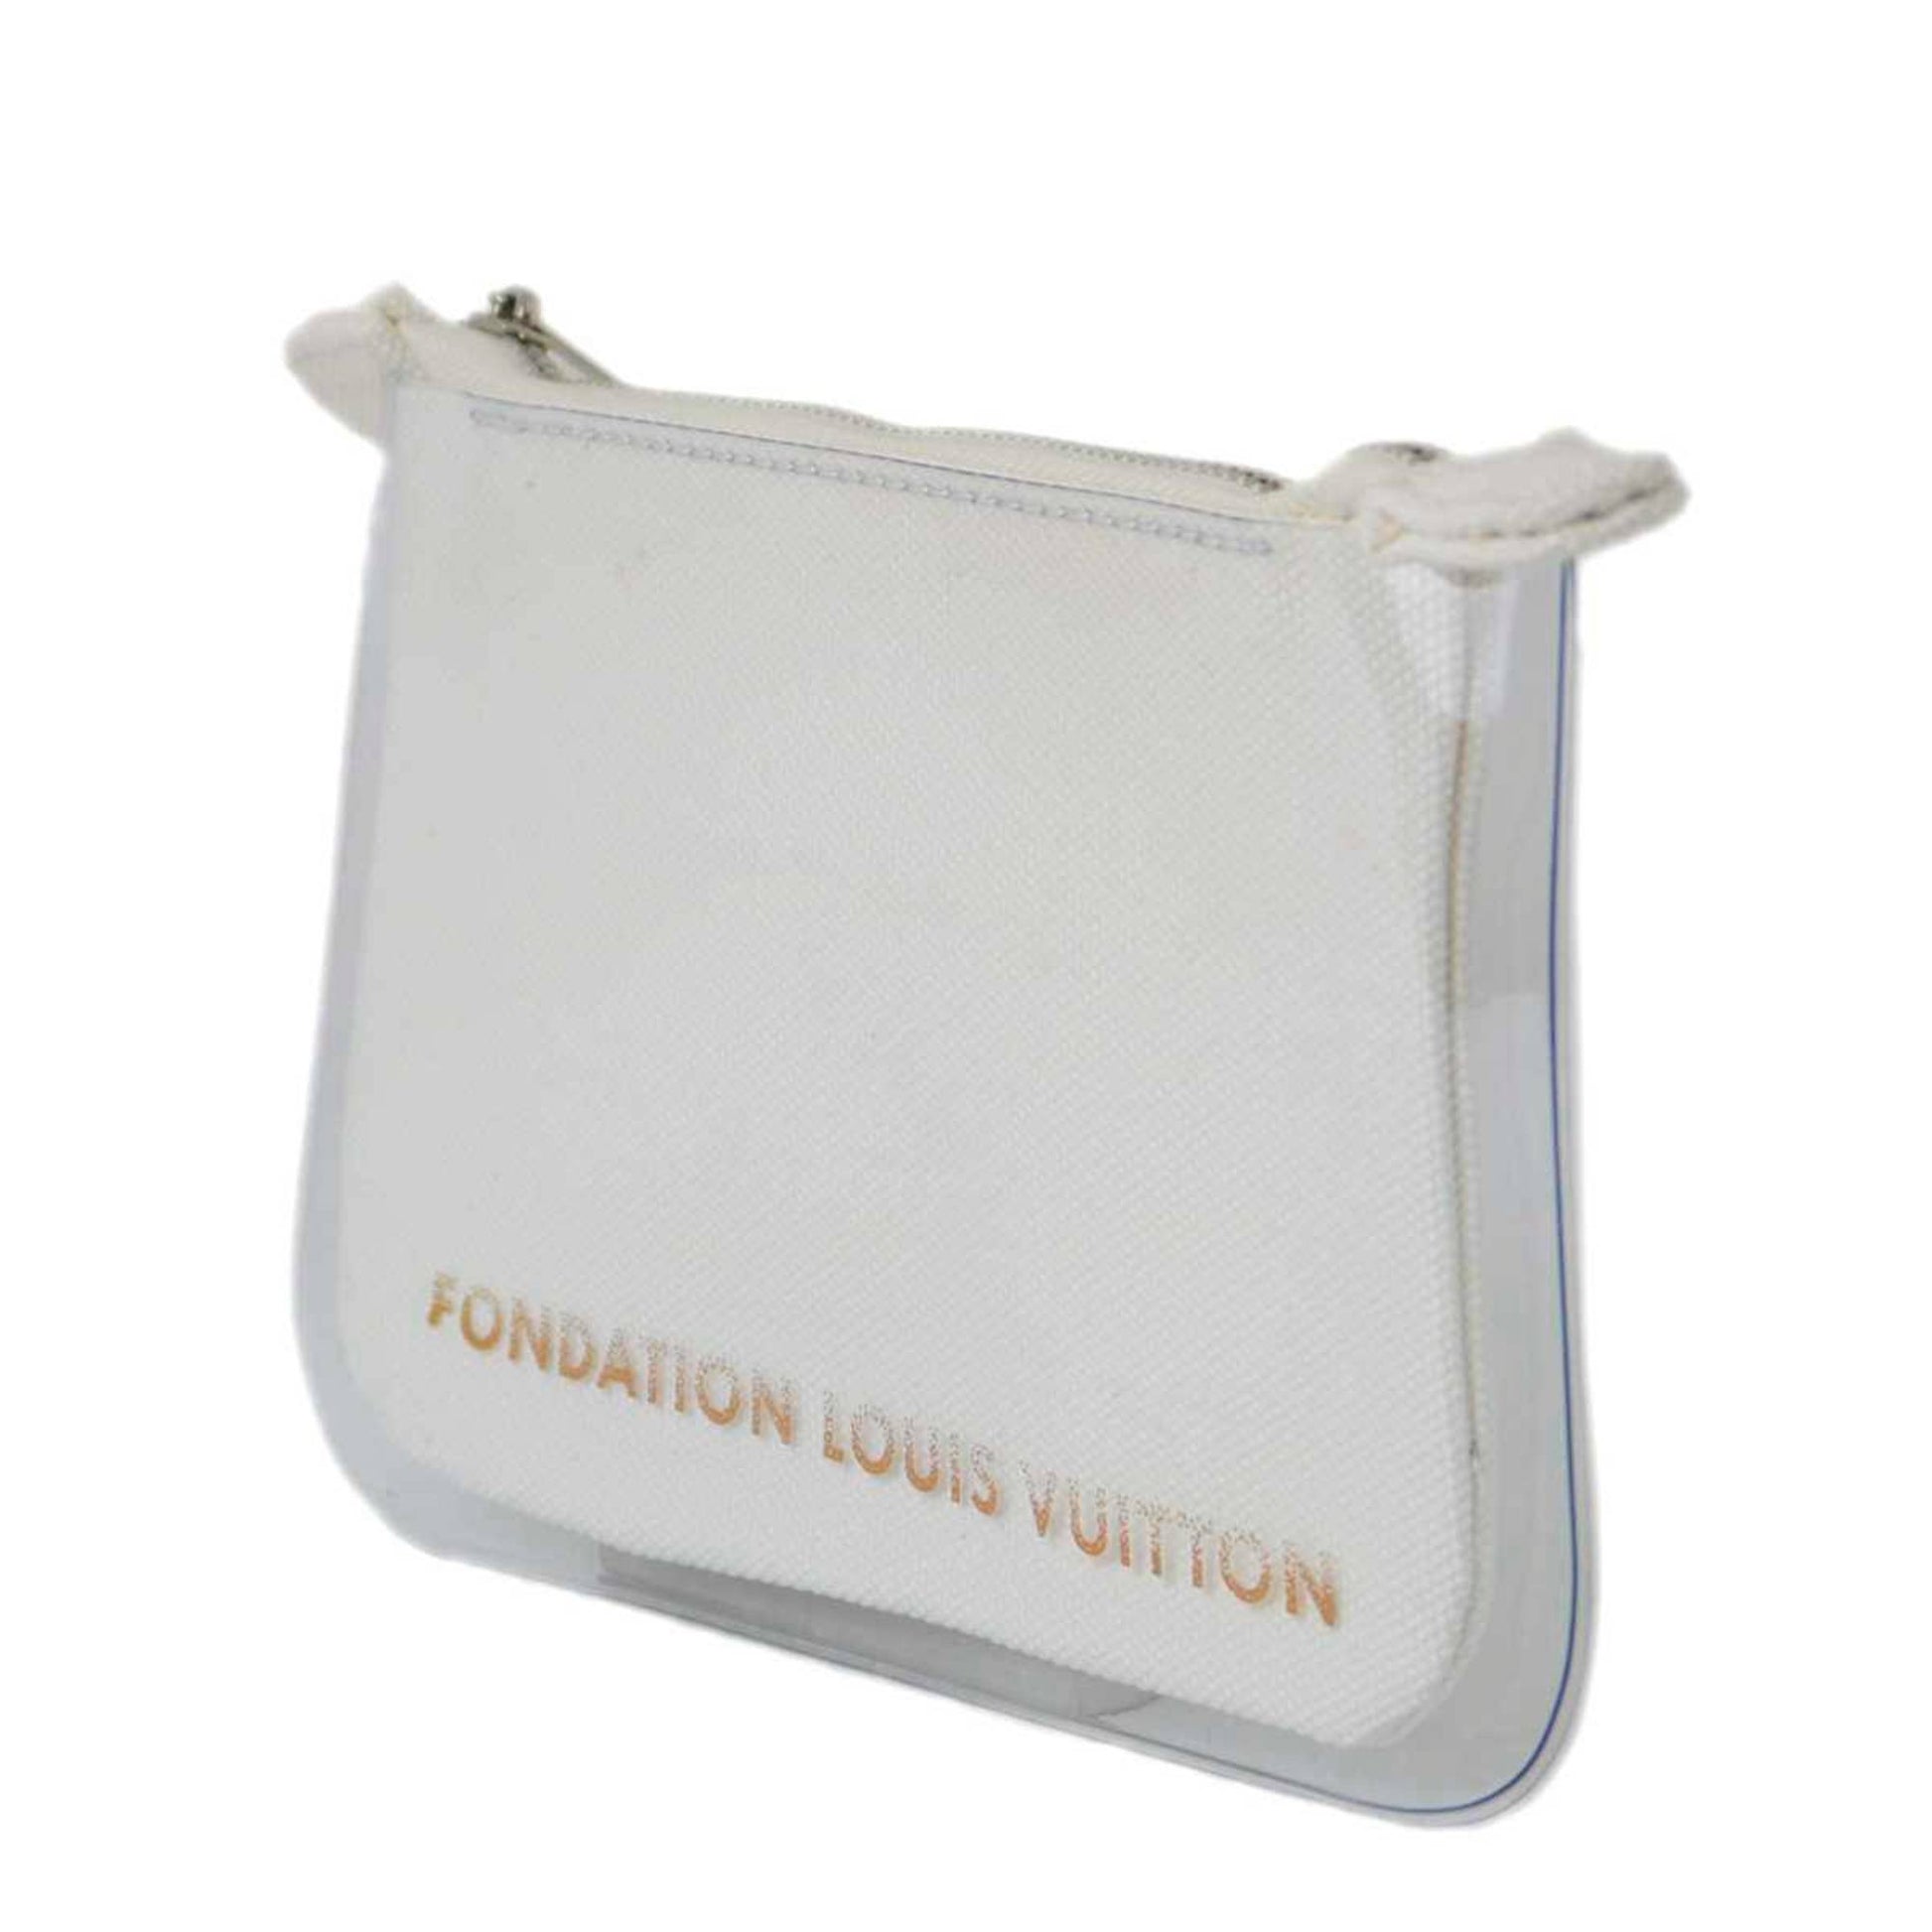 Louis Vuitton Foundation Museum Limited FONDATION LOUIS VUITTON